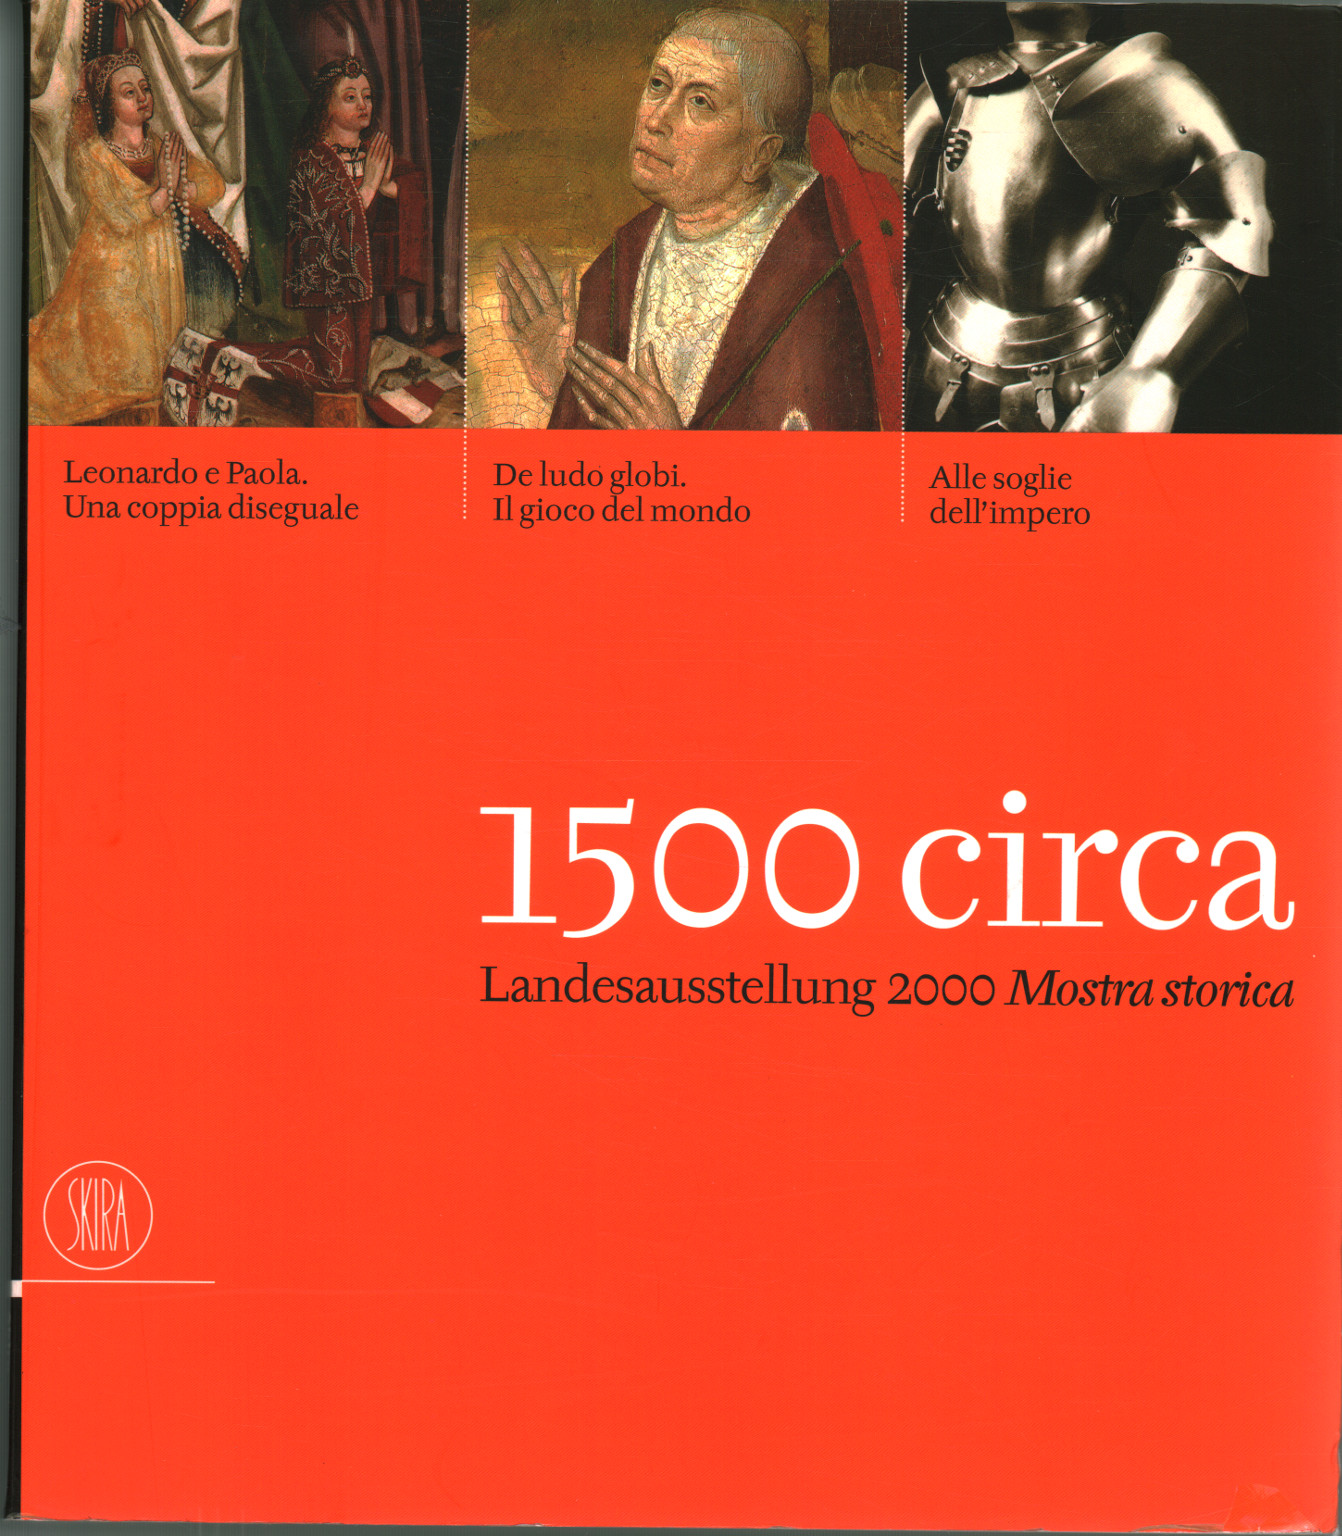 Aproximadamente 1500. Landesausstellung 2000 Exposición histórica, AA.VV